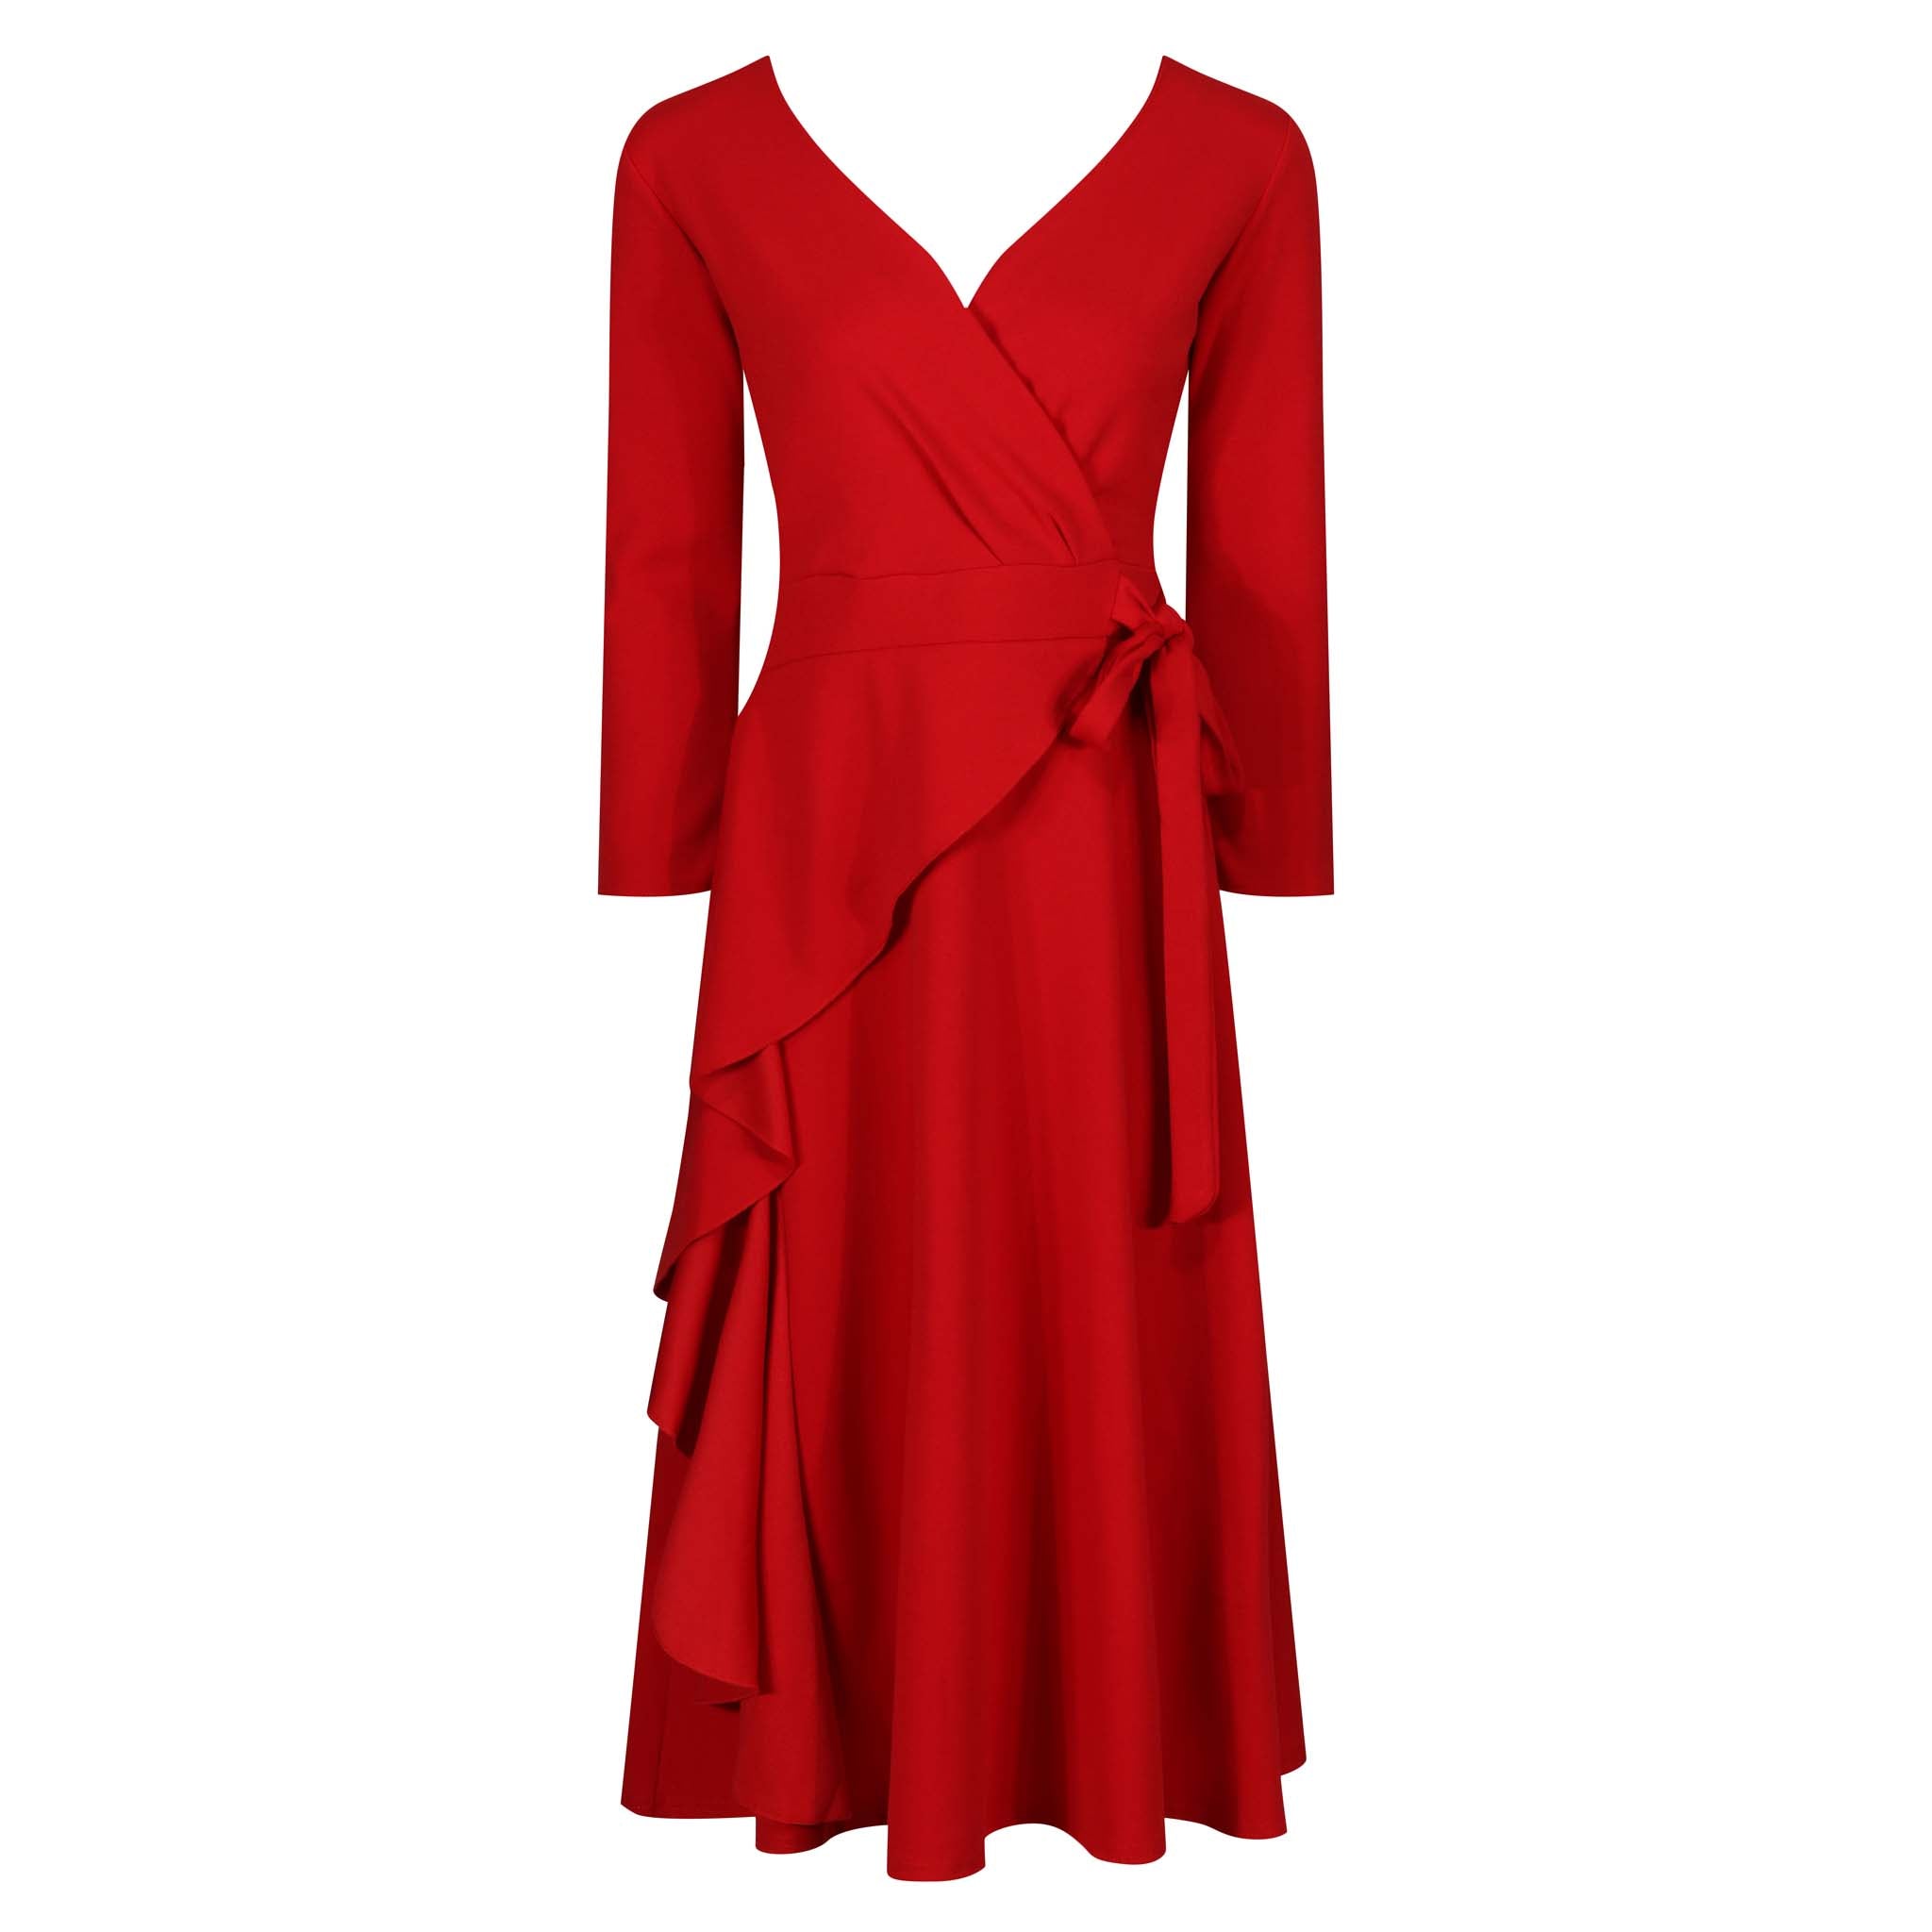 Red Long Sleeve Side Tie Wrap Dress